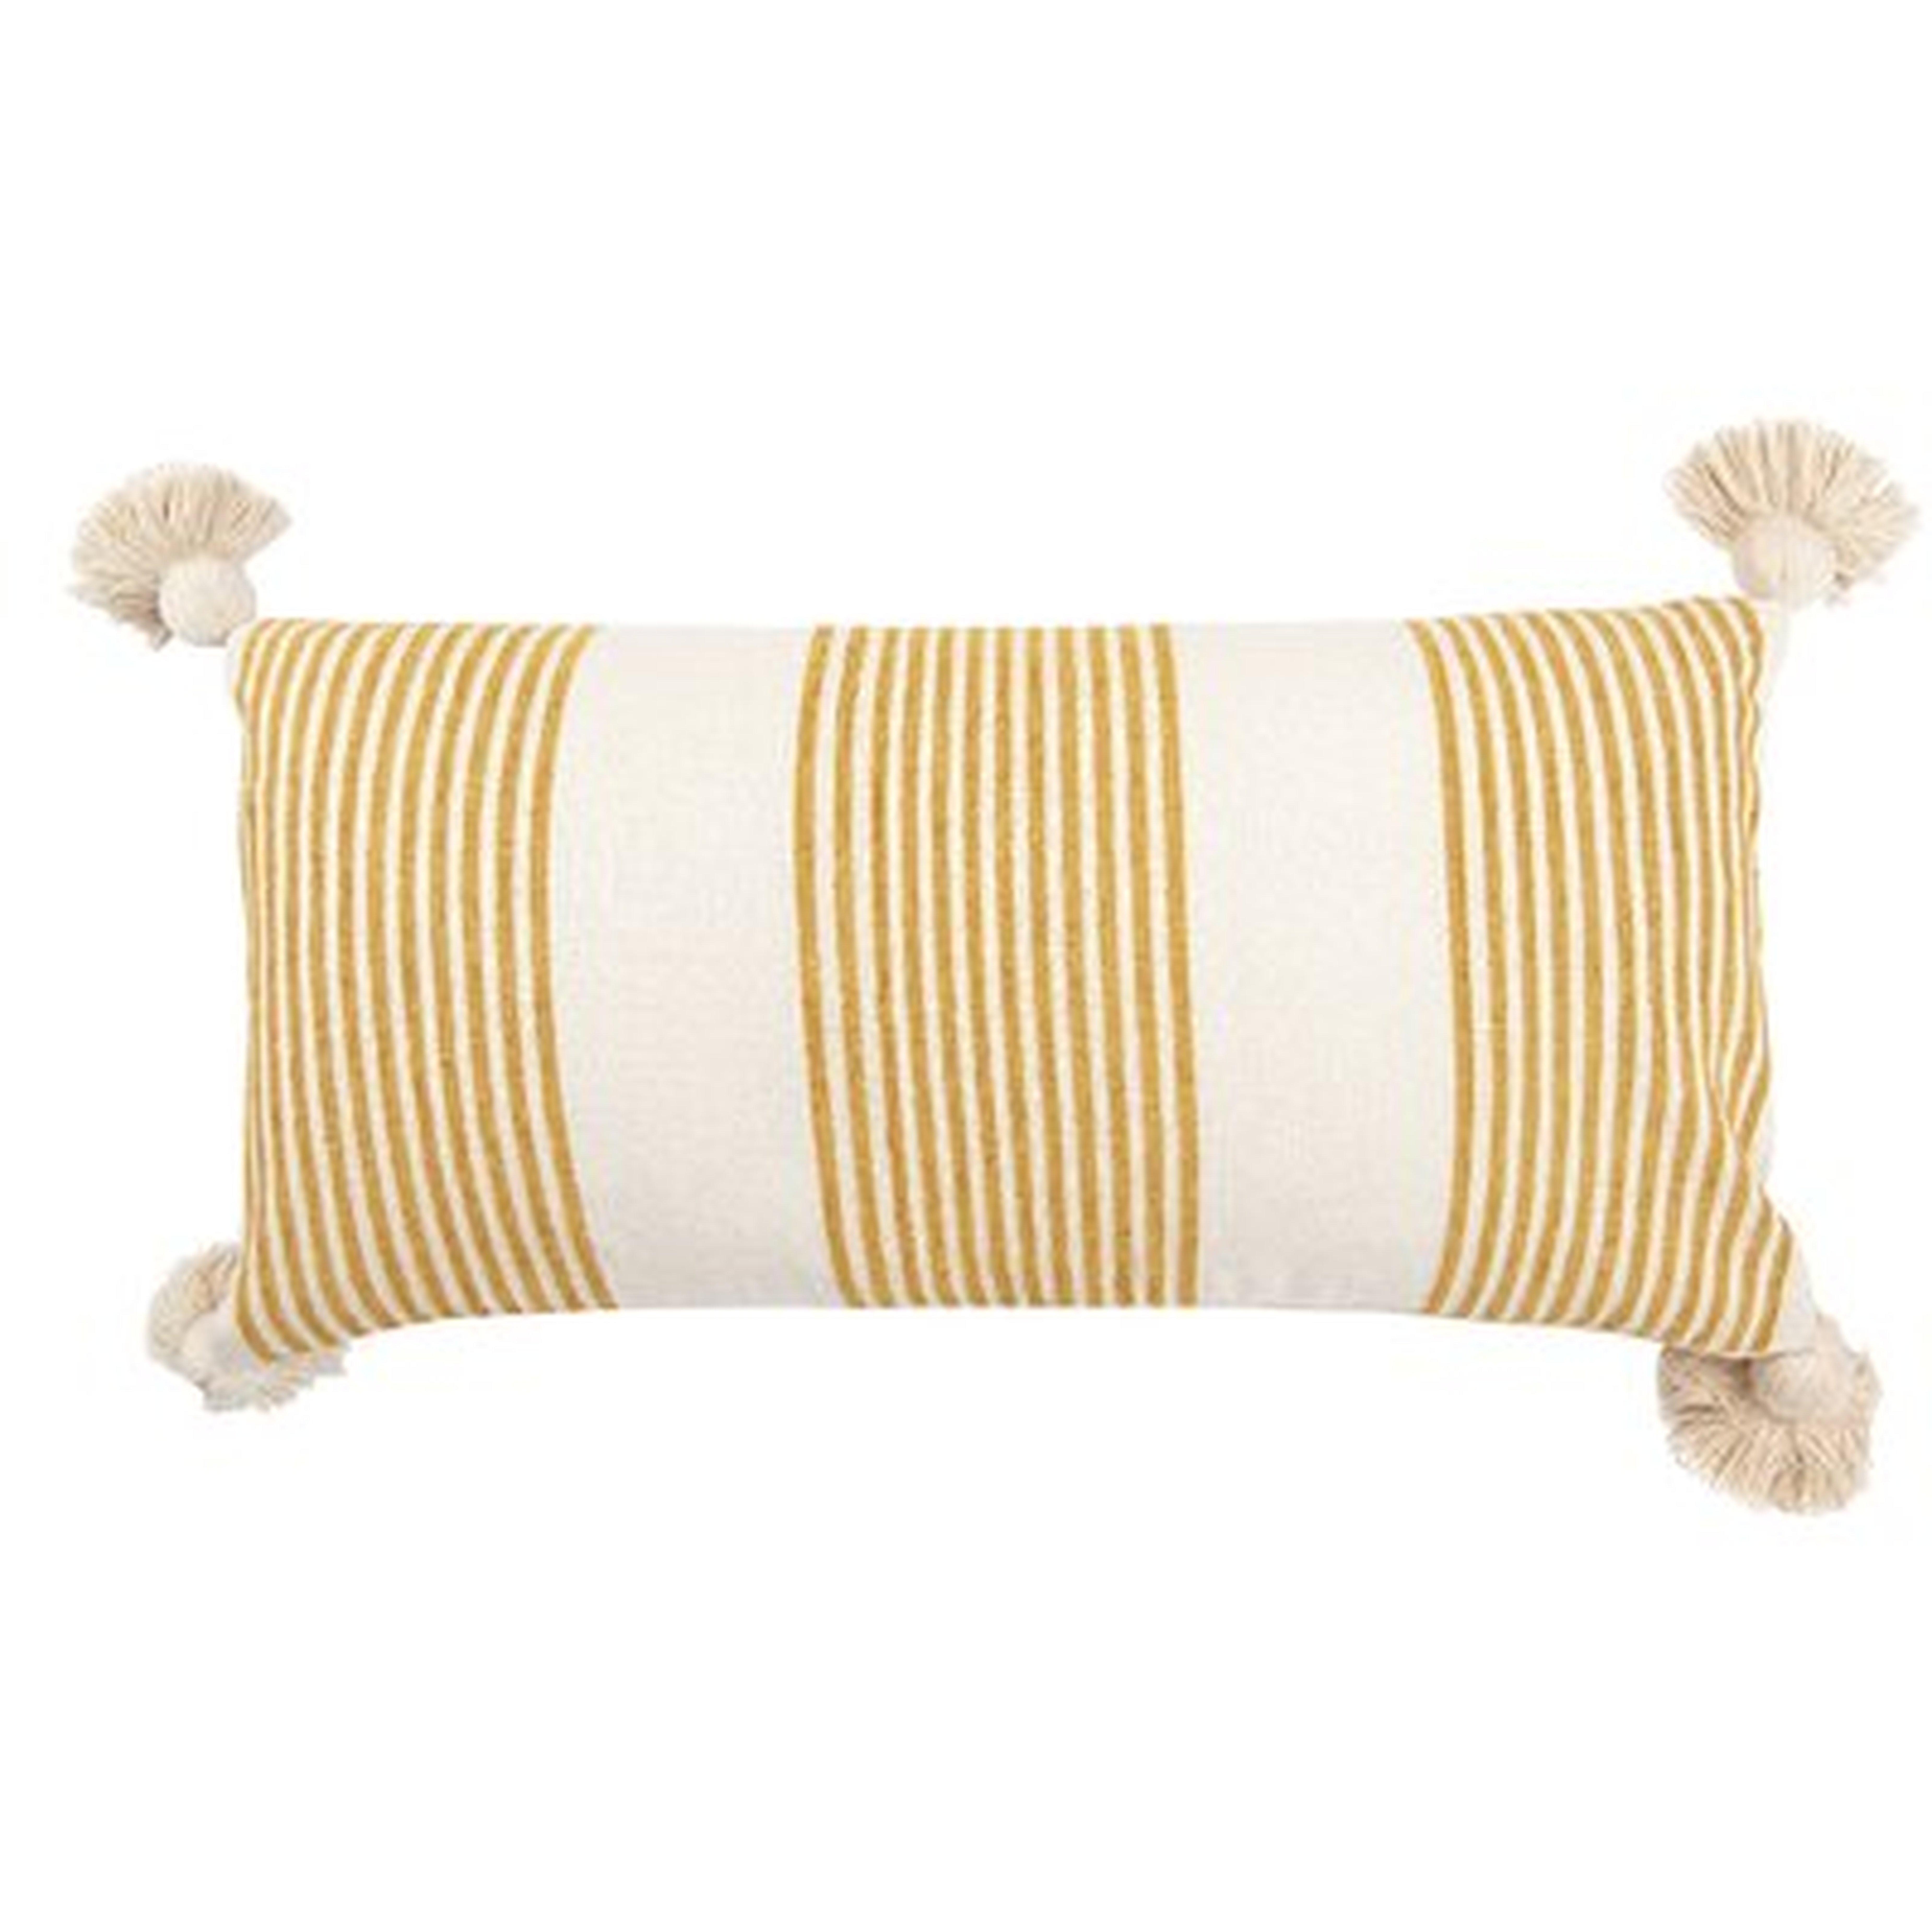 Martz Rectangular Cotton Pillow Cover and Insert - Wayfair